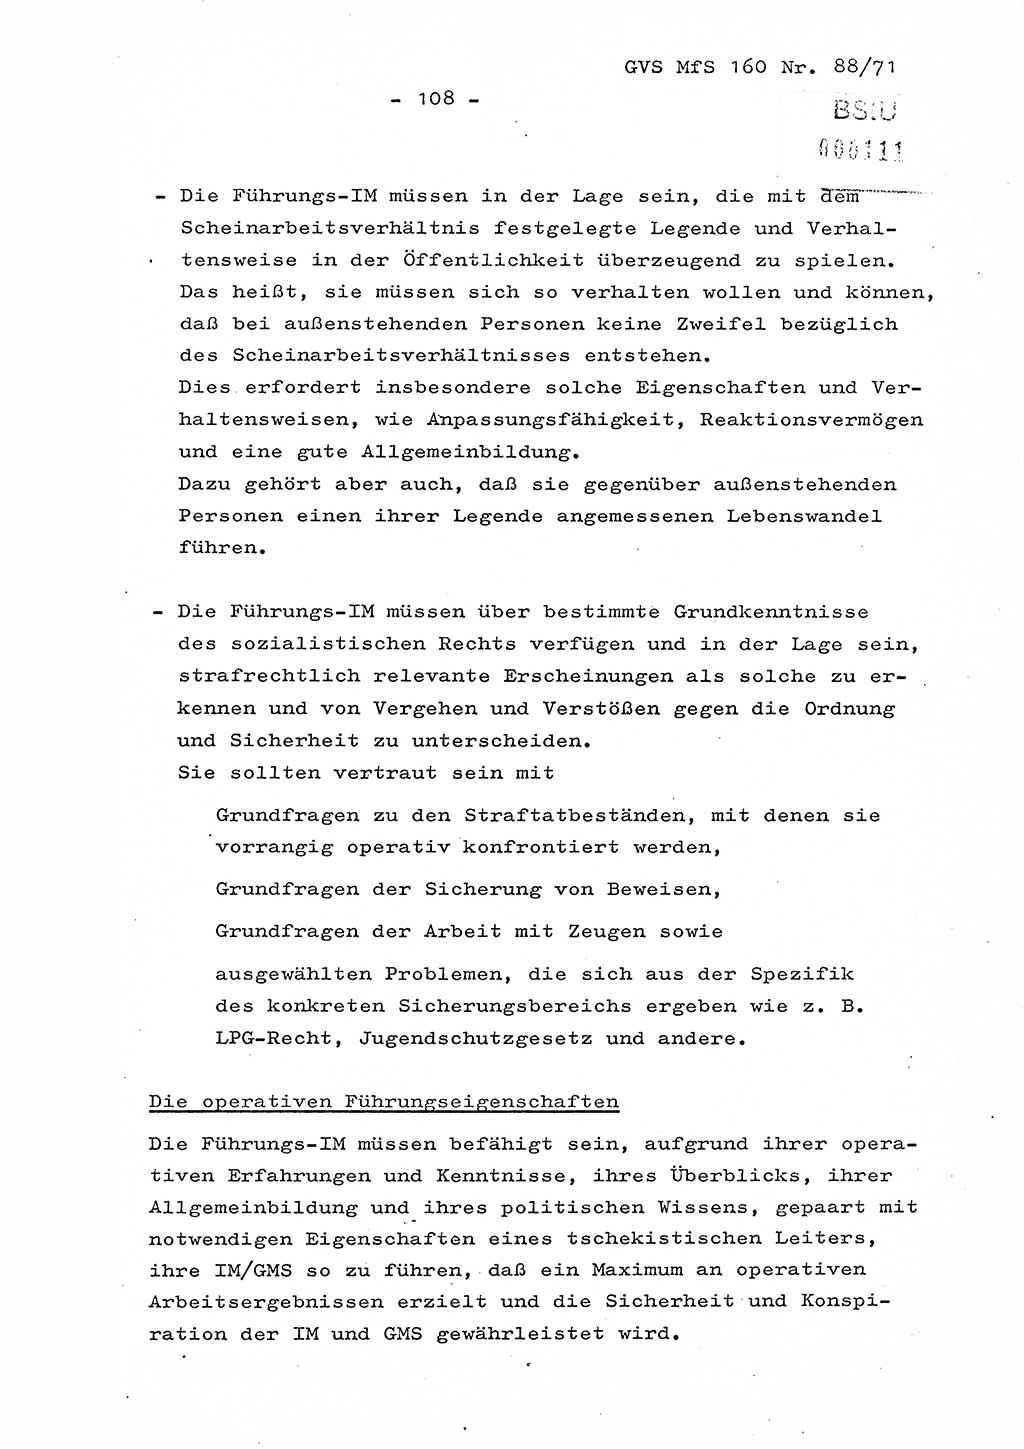 Dissertation Oberstleutnant Josef Schwarz (BV Schwerin), Major Fritz Amm (JHS), Hauptmann Peter Gräßler (JHS), Ministerium für Staatssicherheit (MfS) [Deutsche Demokratische Republik (DDR)], Juristische Hochschule (JHS), Geheime Verschlußsache (GVS) 160-88/71, Potsdam 1972, Seite 108 (Diss. MfS DDR JHS GVS 160-88/71 1972, S. 108)